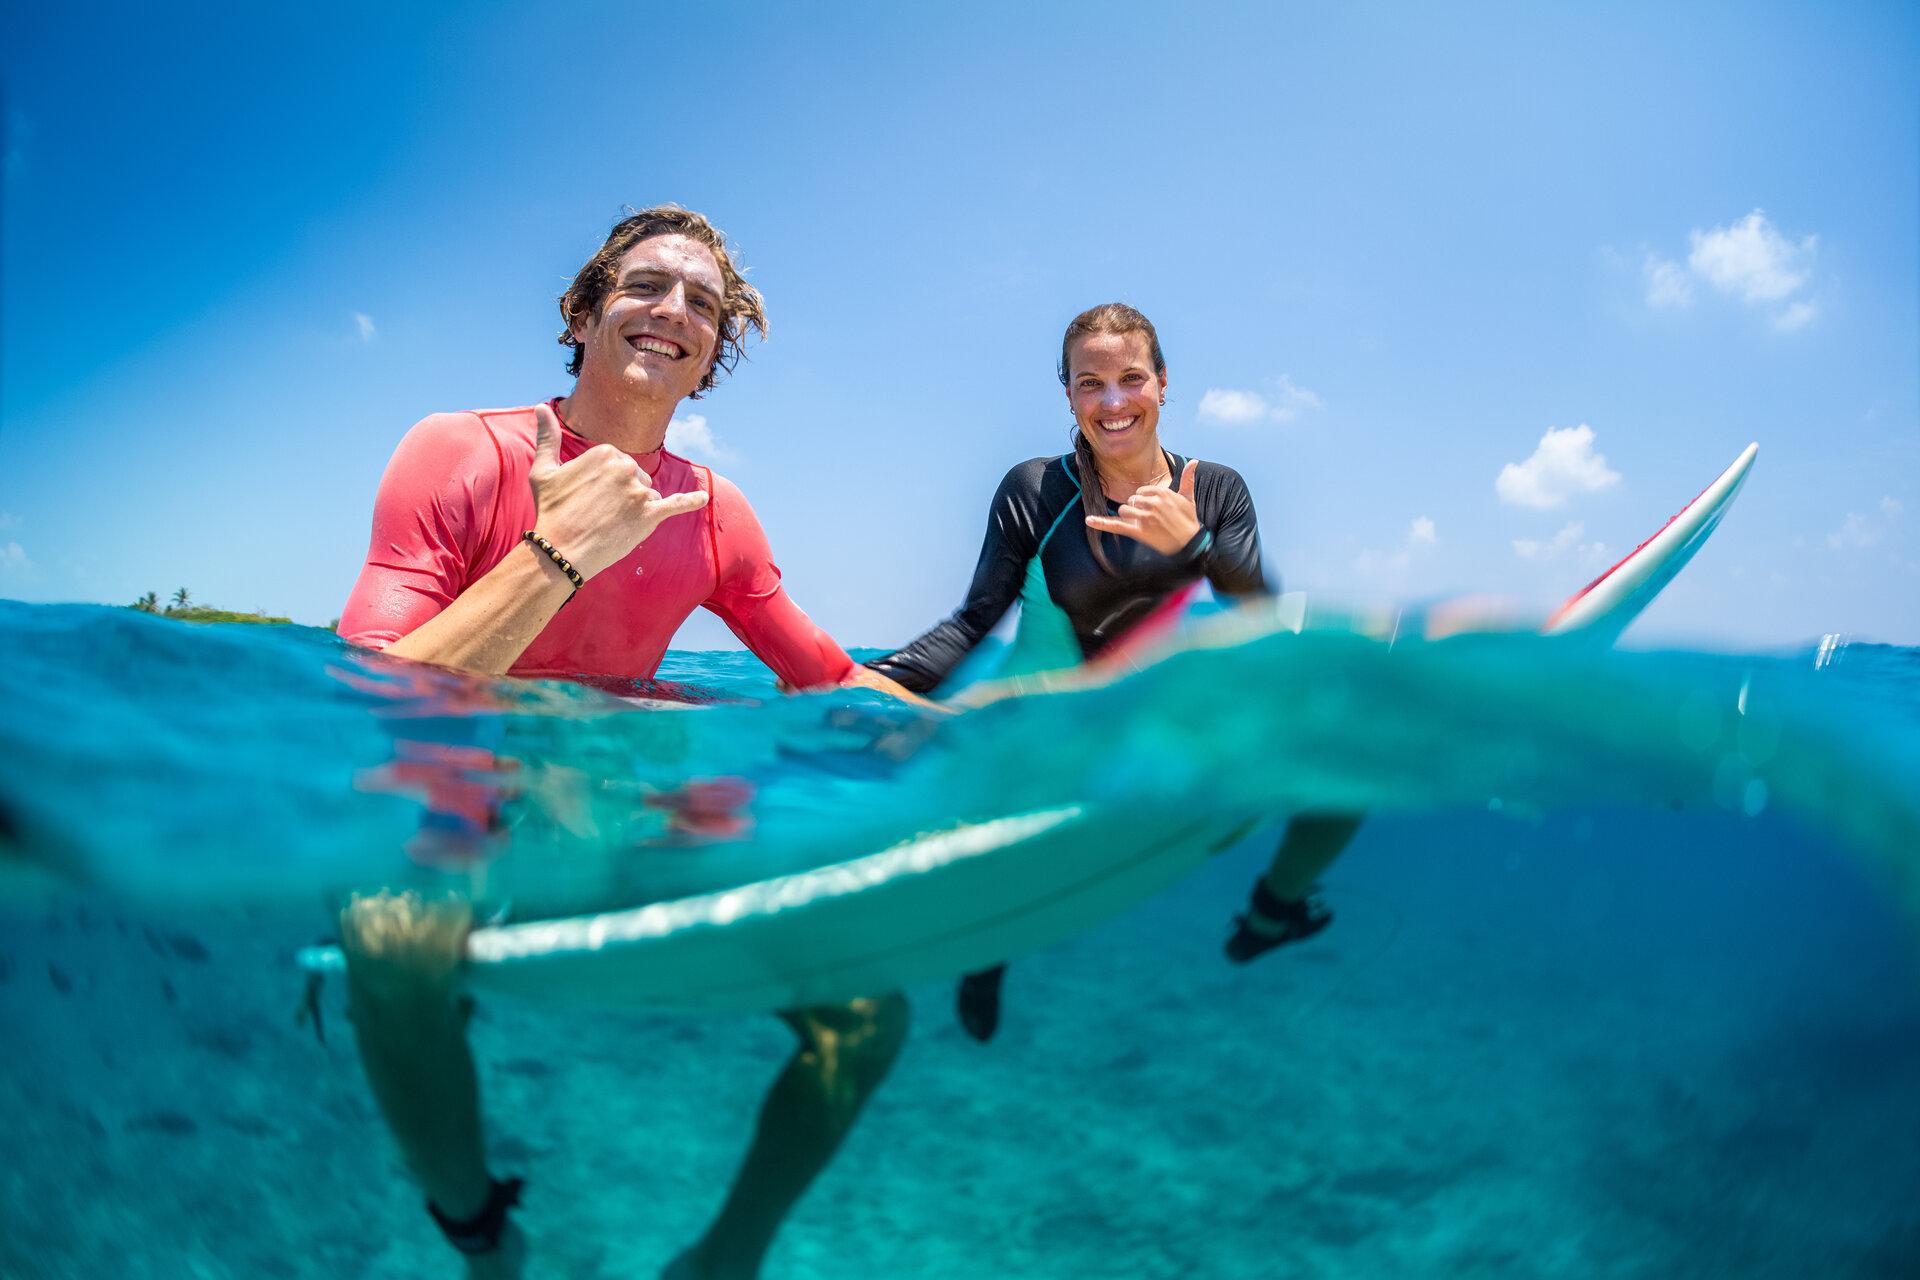 Junge glückliche Surfer, Mann und Frau, sitzen auf den Surfbrettern im Wasser